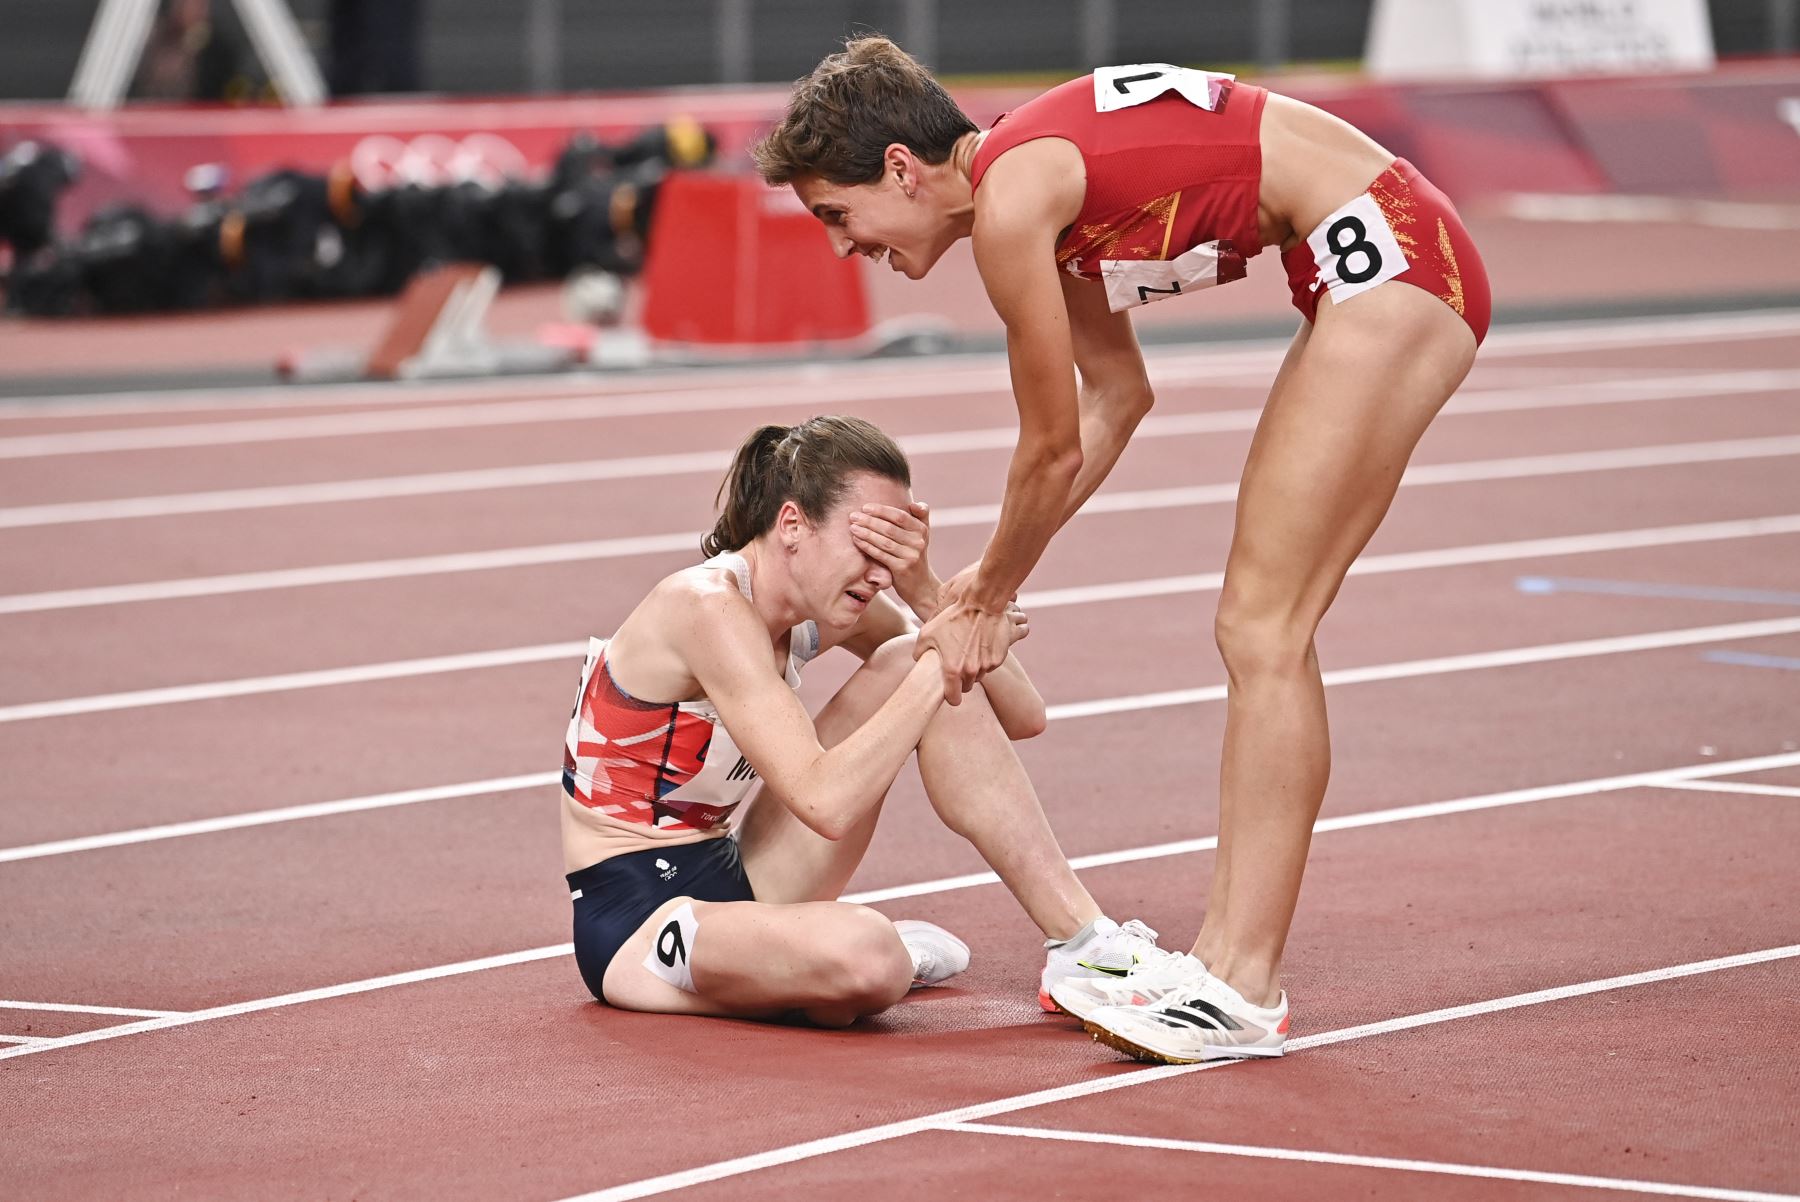 La española Marta Pérez felicita a la británica Laura Muir, segunda clasificada, después de competir en la final femenina de 1500 metros durante los Juegos Olímpicos de Tokio 2020. Foto: AFP